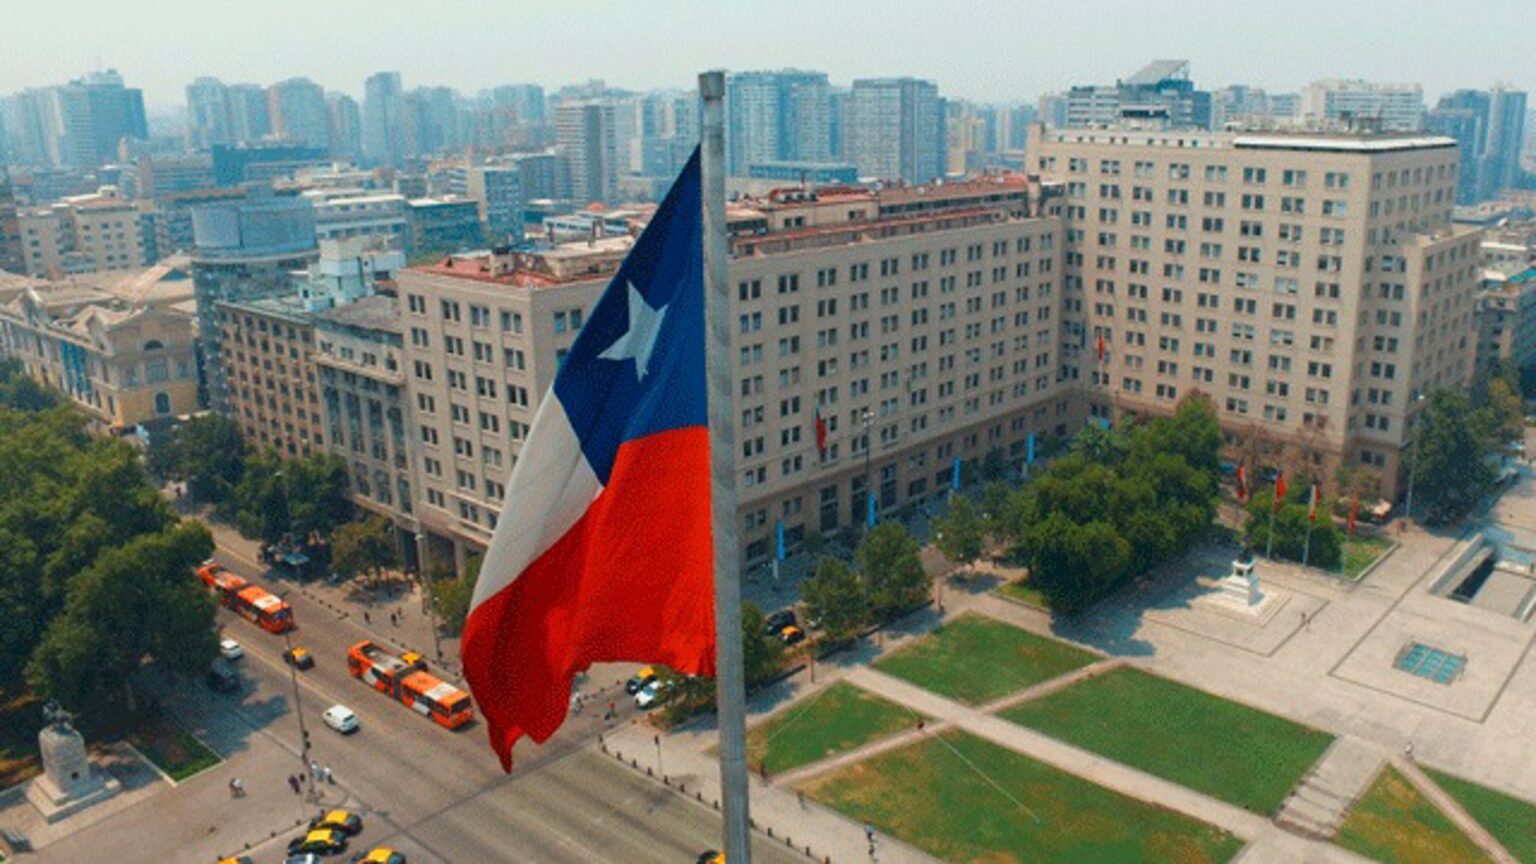 Chile expide el primer documento de identidad a una persona no binaria